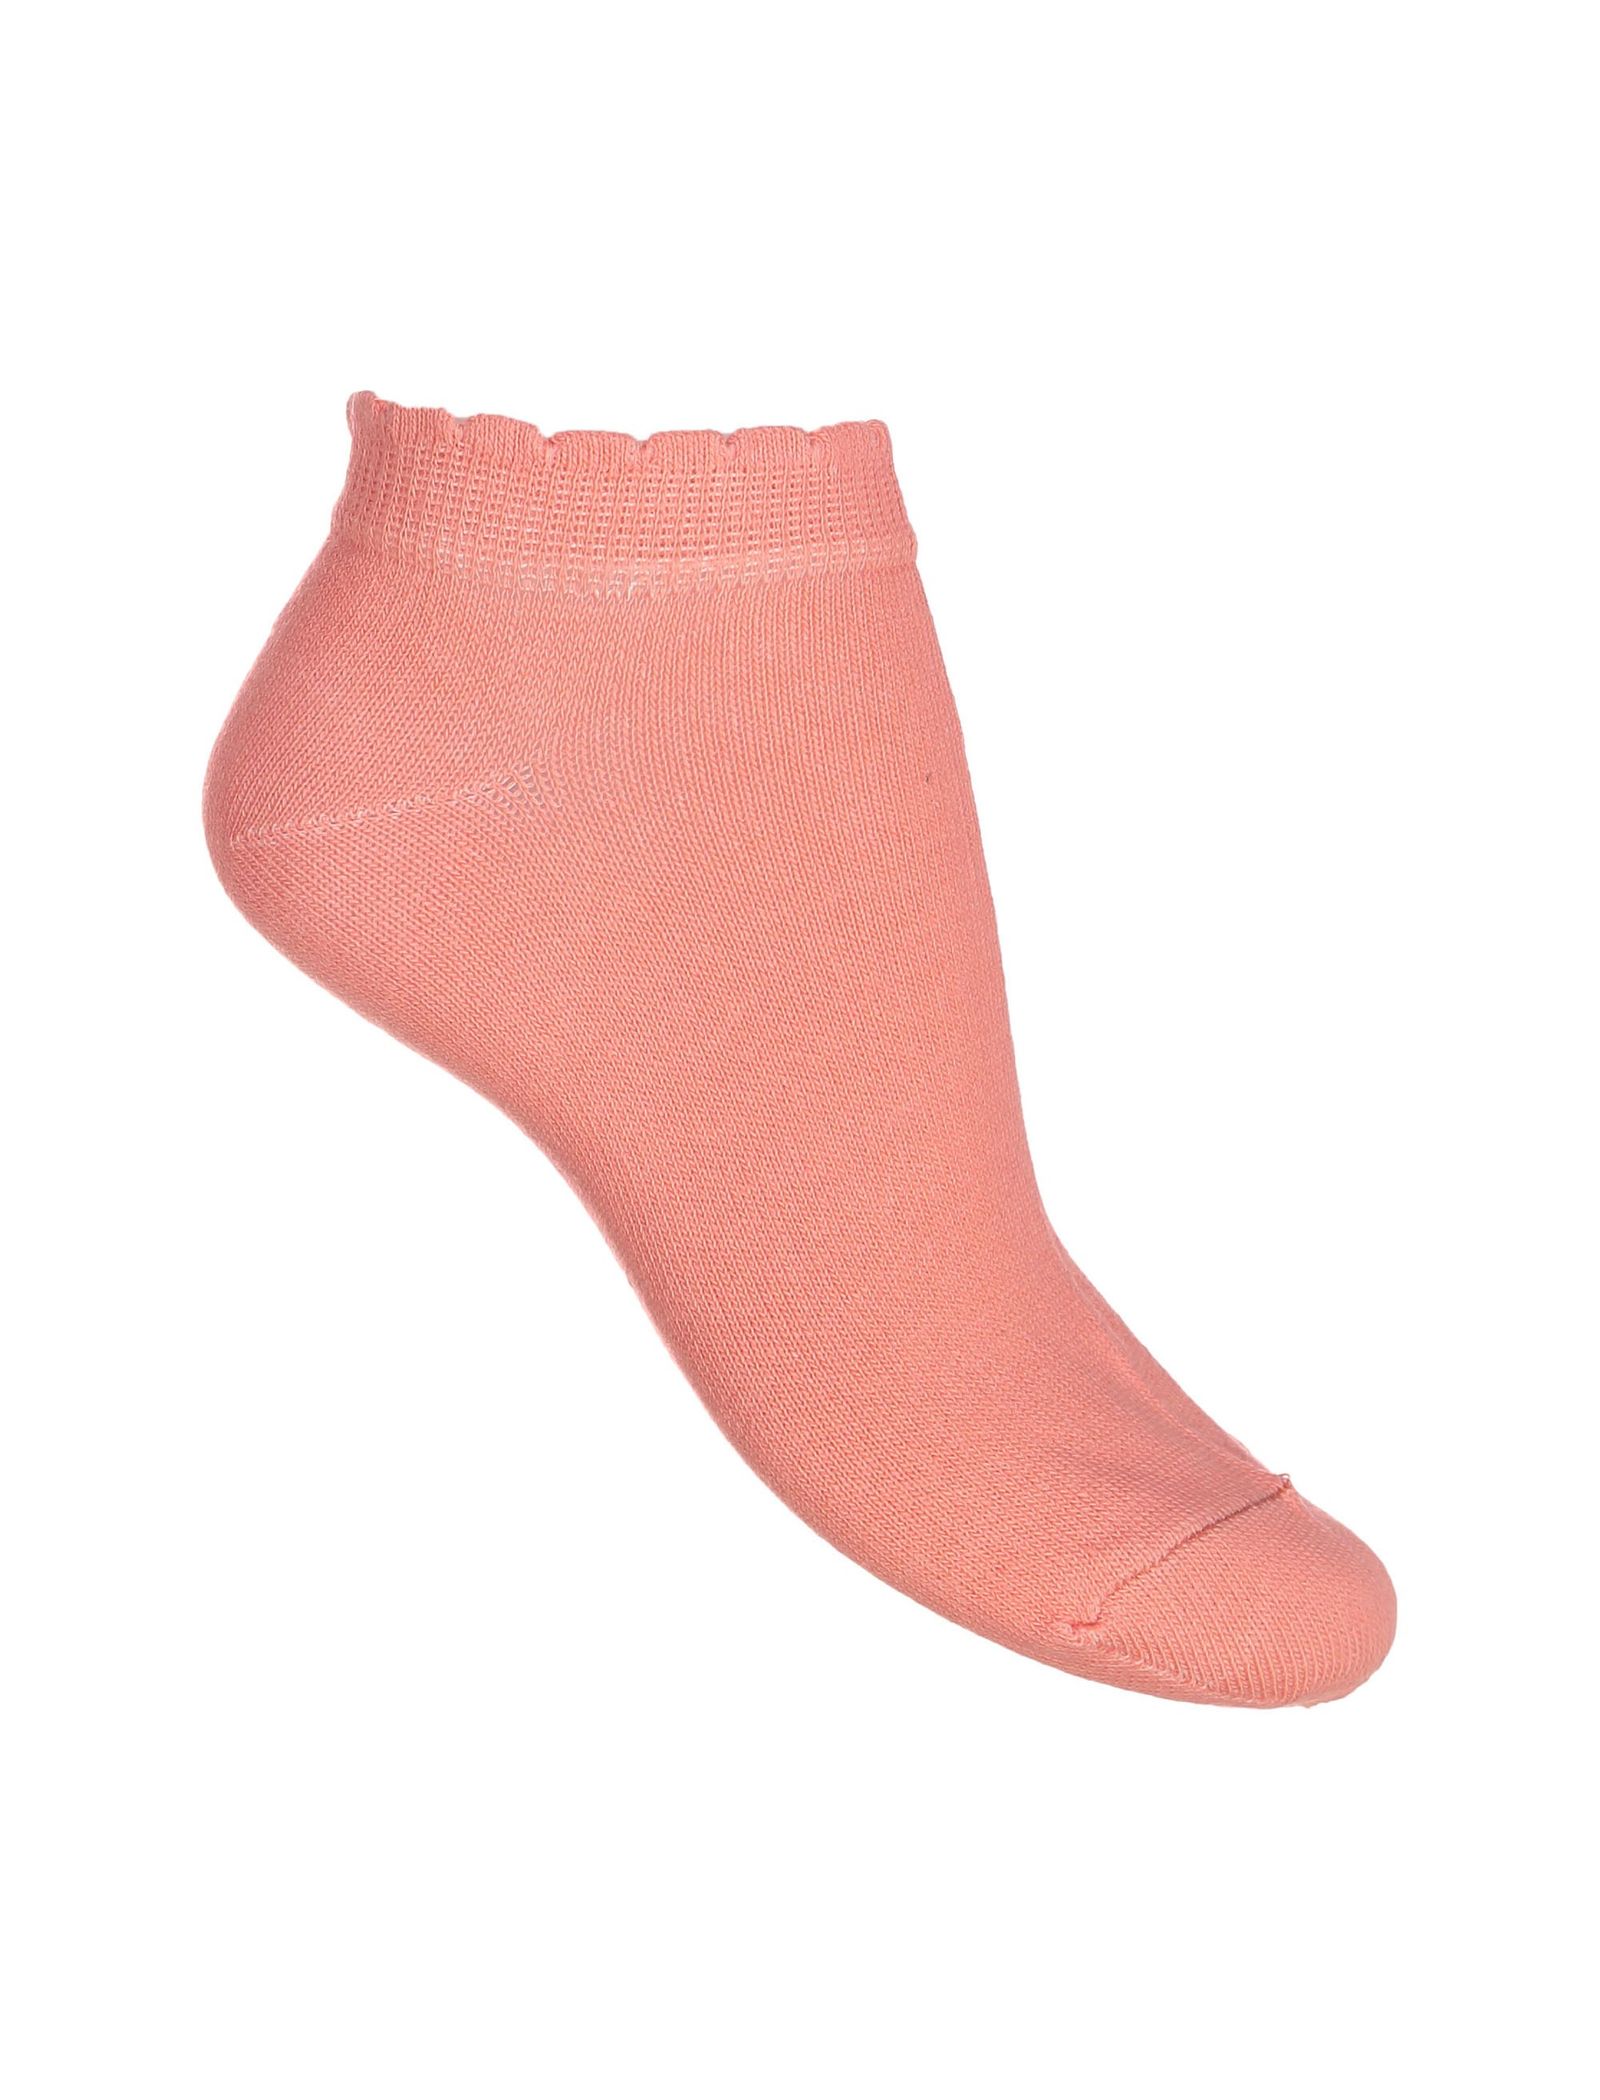 جوراب ساق کوتاه زنانه بسته 6 عددی - دفکتو - چند رنگ - 12